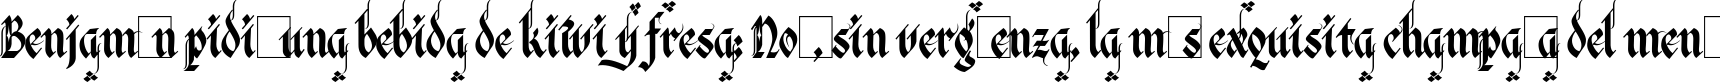 Пример написания шрифтом Verona Gothic Flourishe текста на испанском